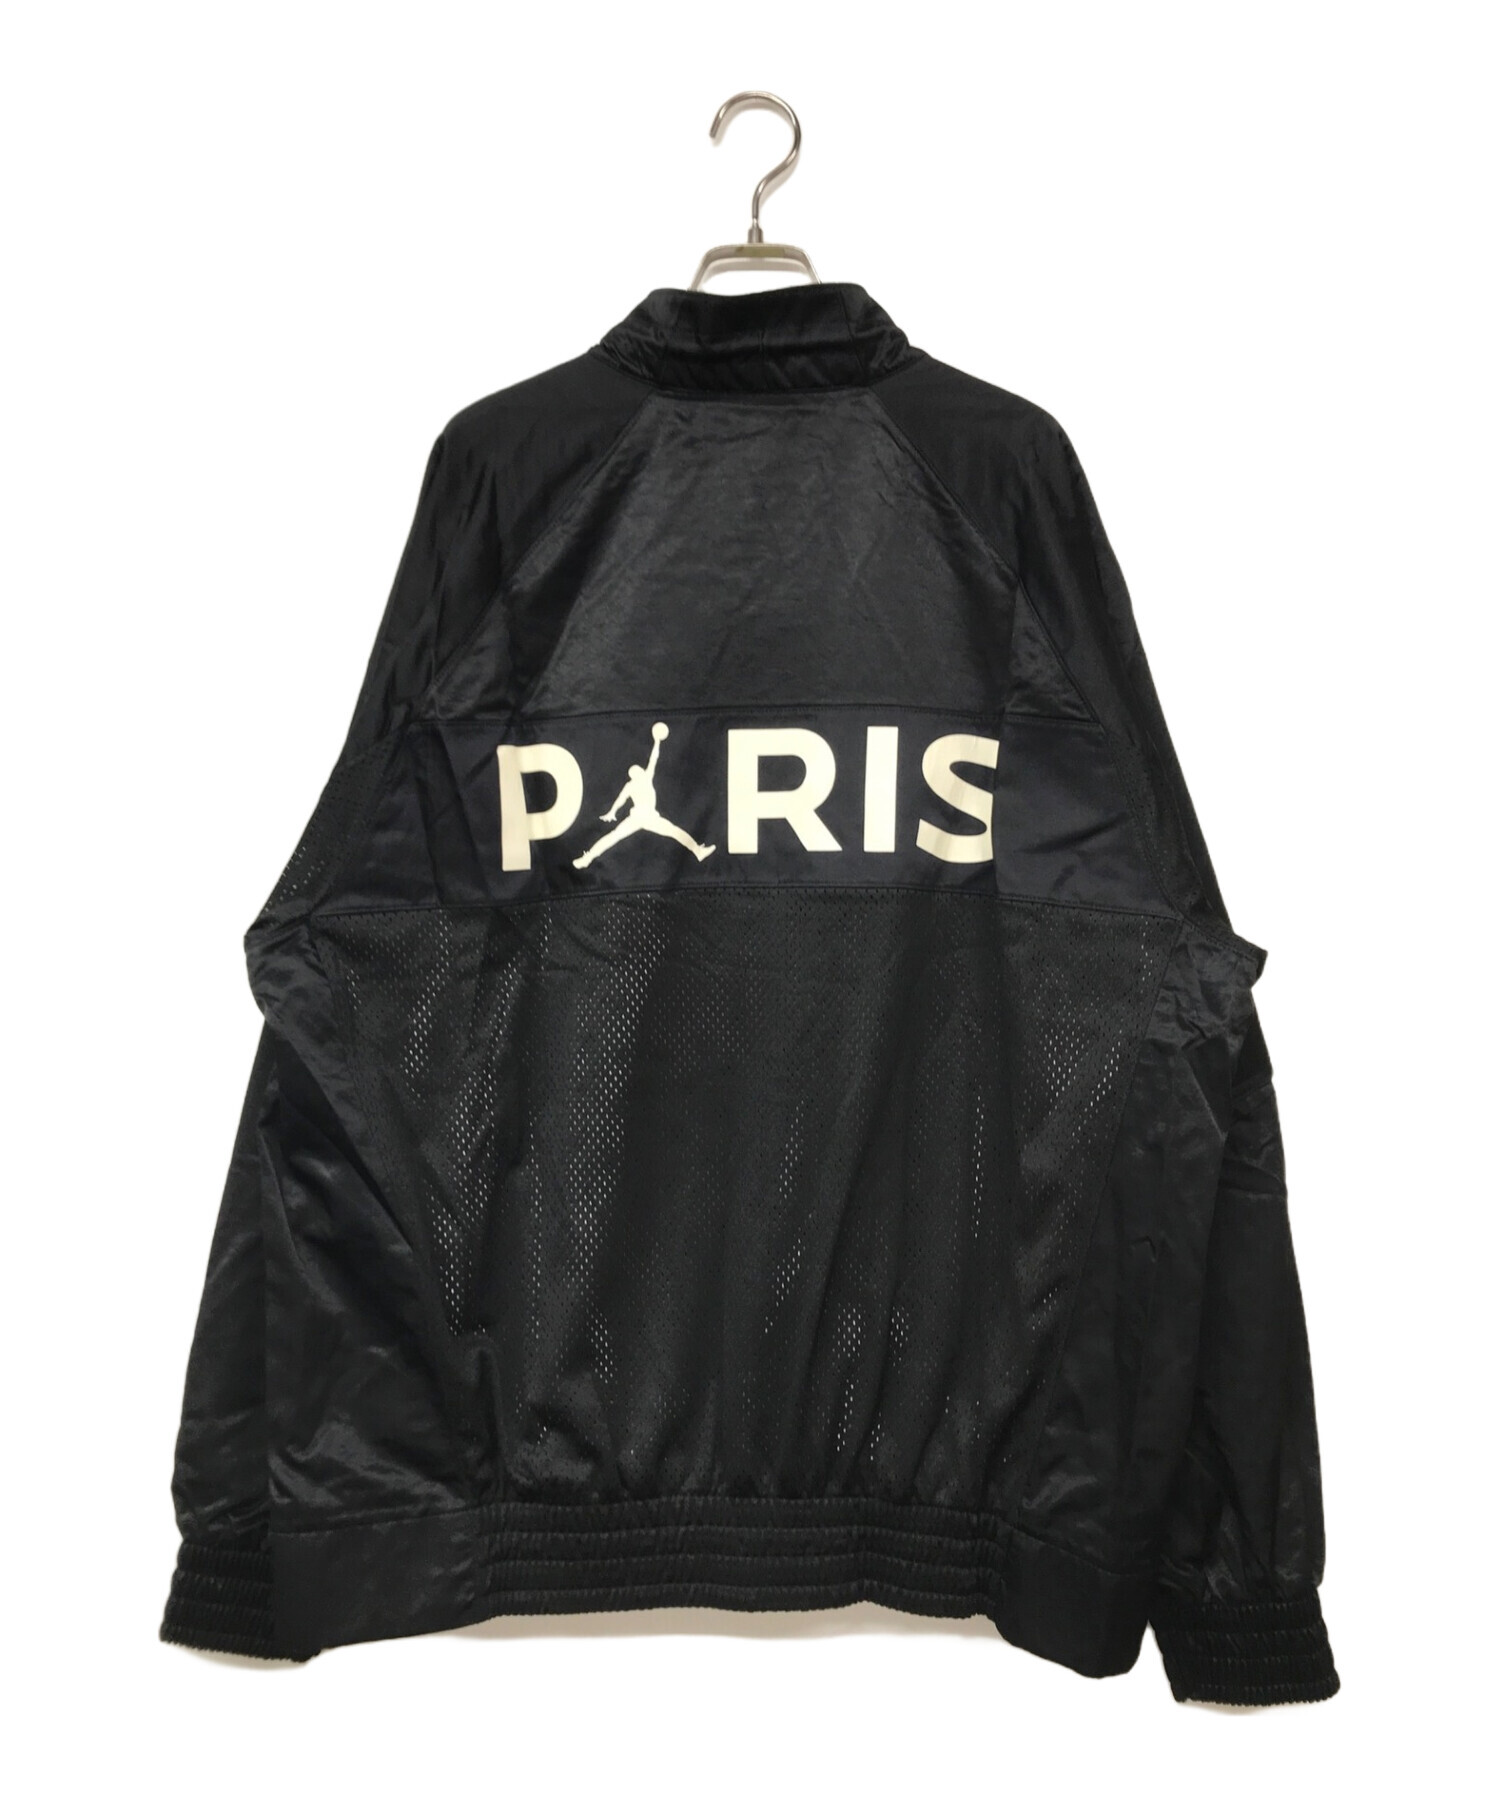 JORDAN (ジョーダン) PSG (パリ・サンジェルマンFC) スーツジャケット ブラック サイズ:M